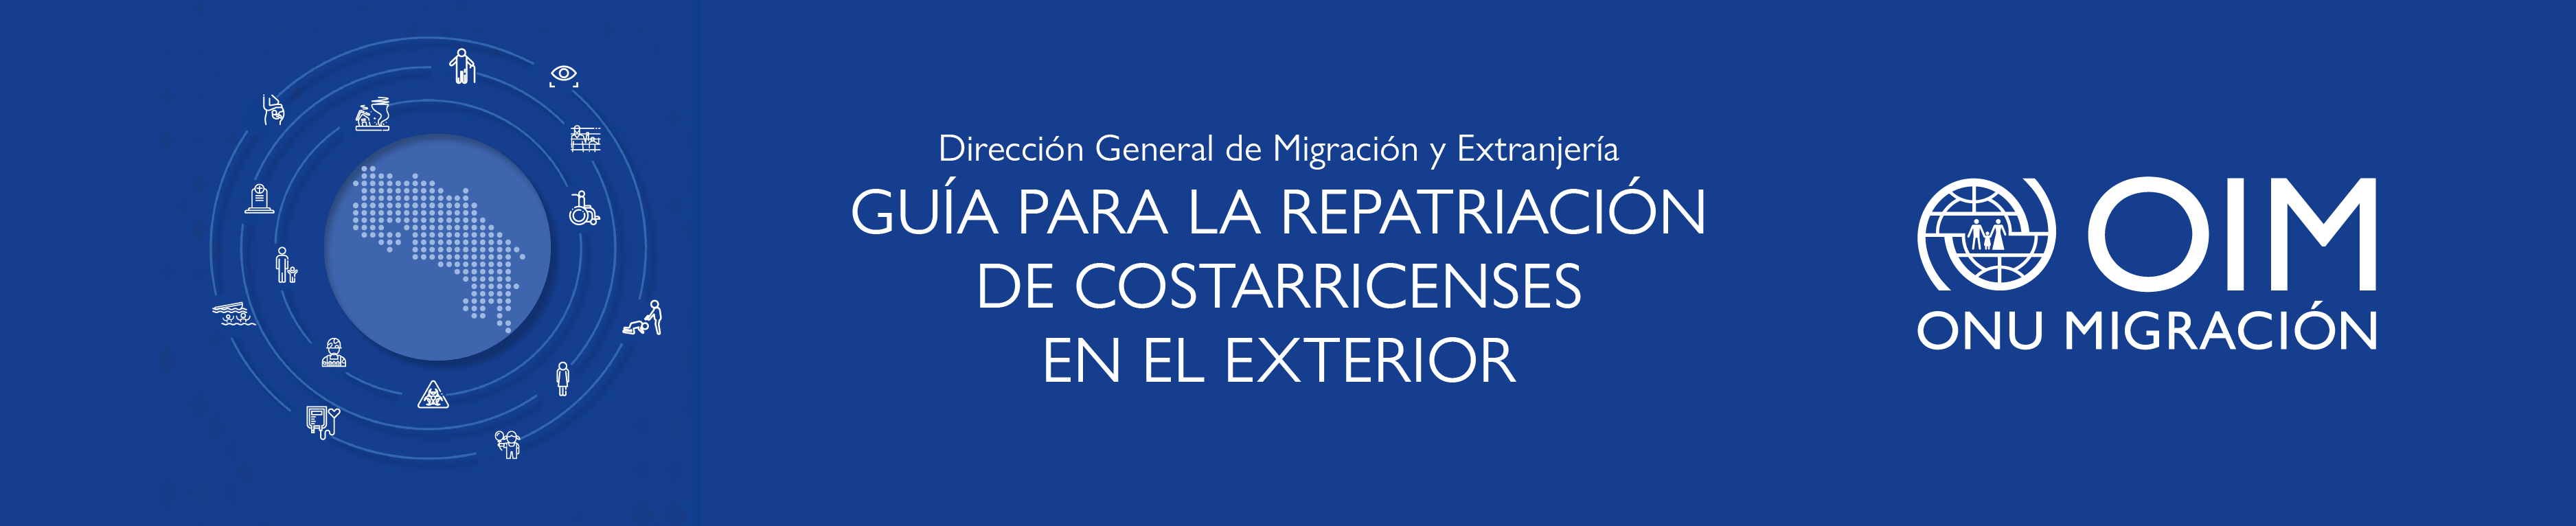 Biblioteca virtual 6_Dirección General de Migración y Extranjería-7.png